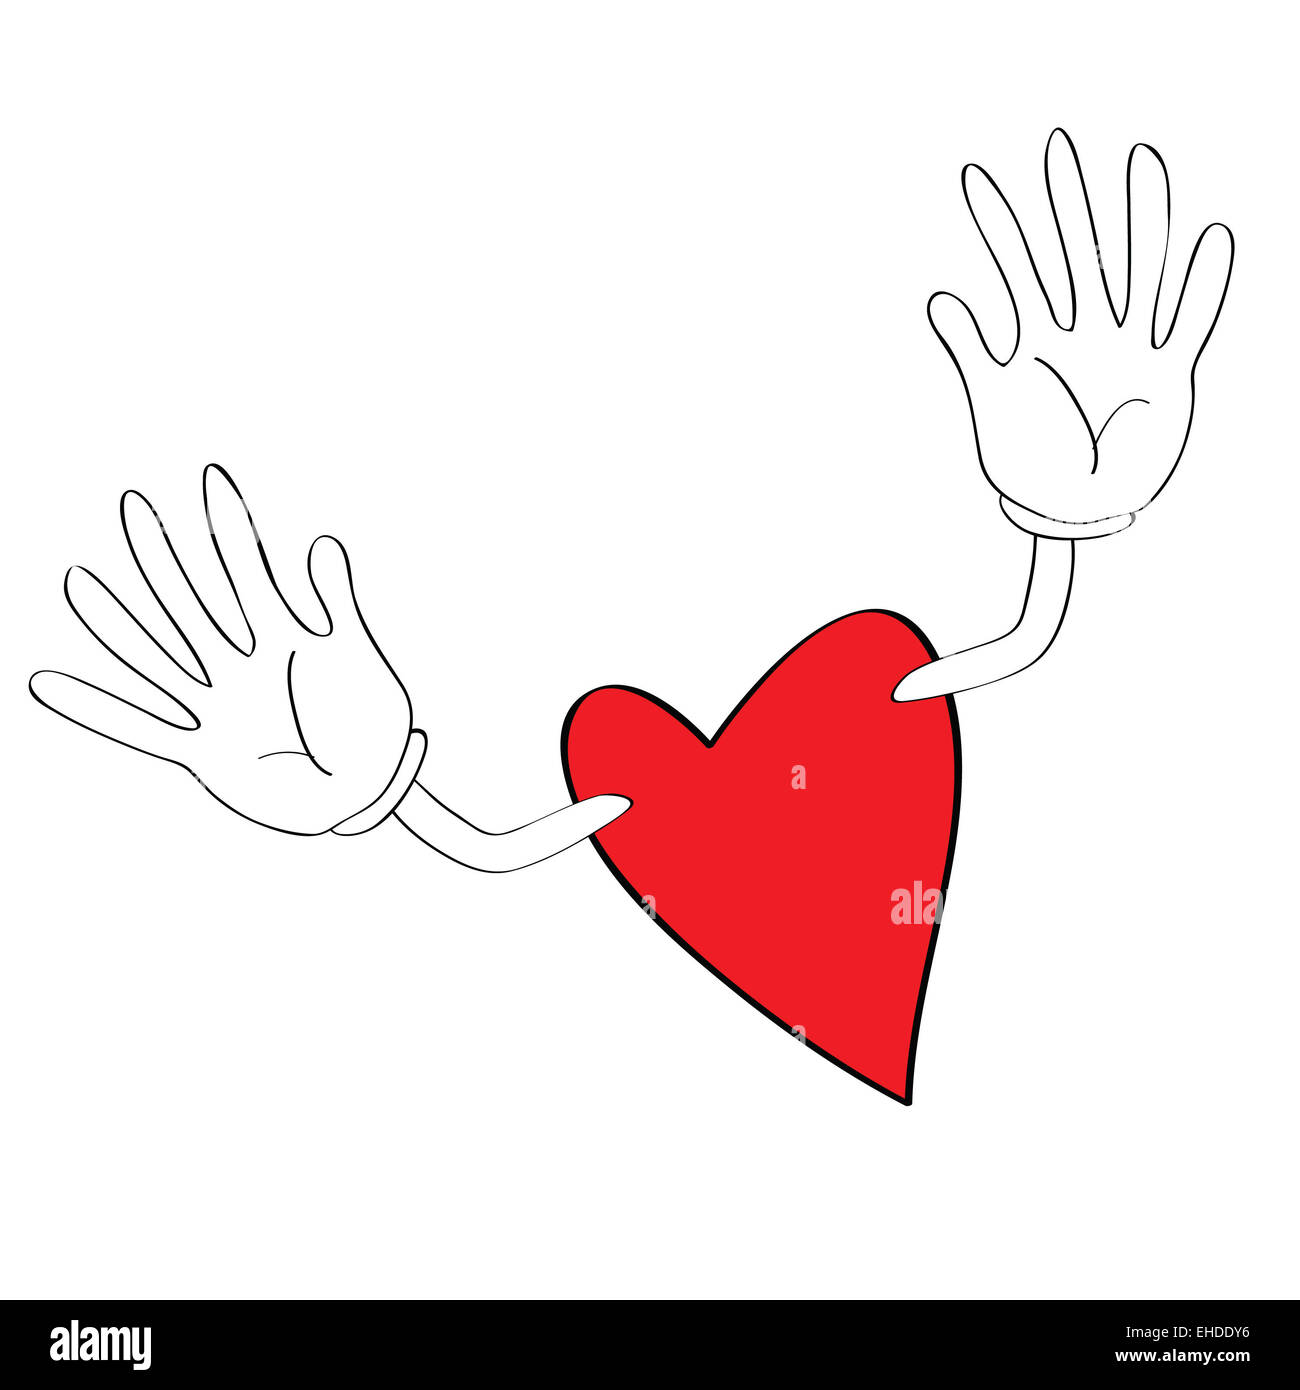 heart cartoon Stock Photo